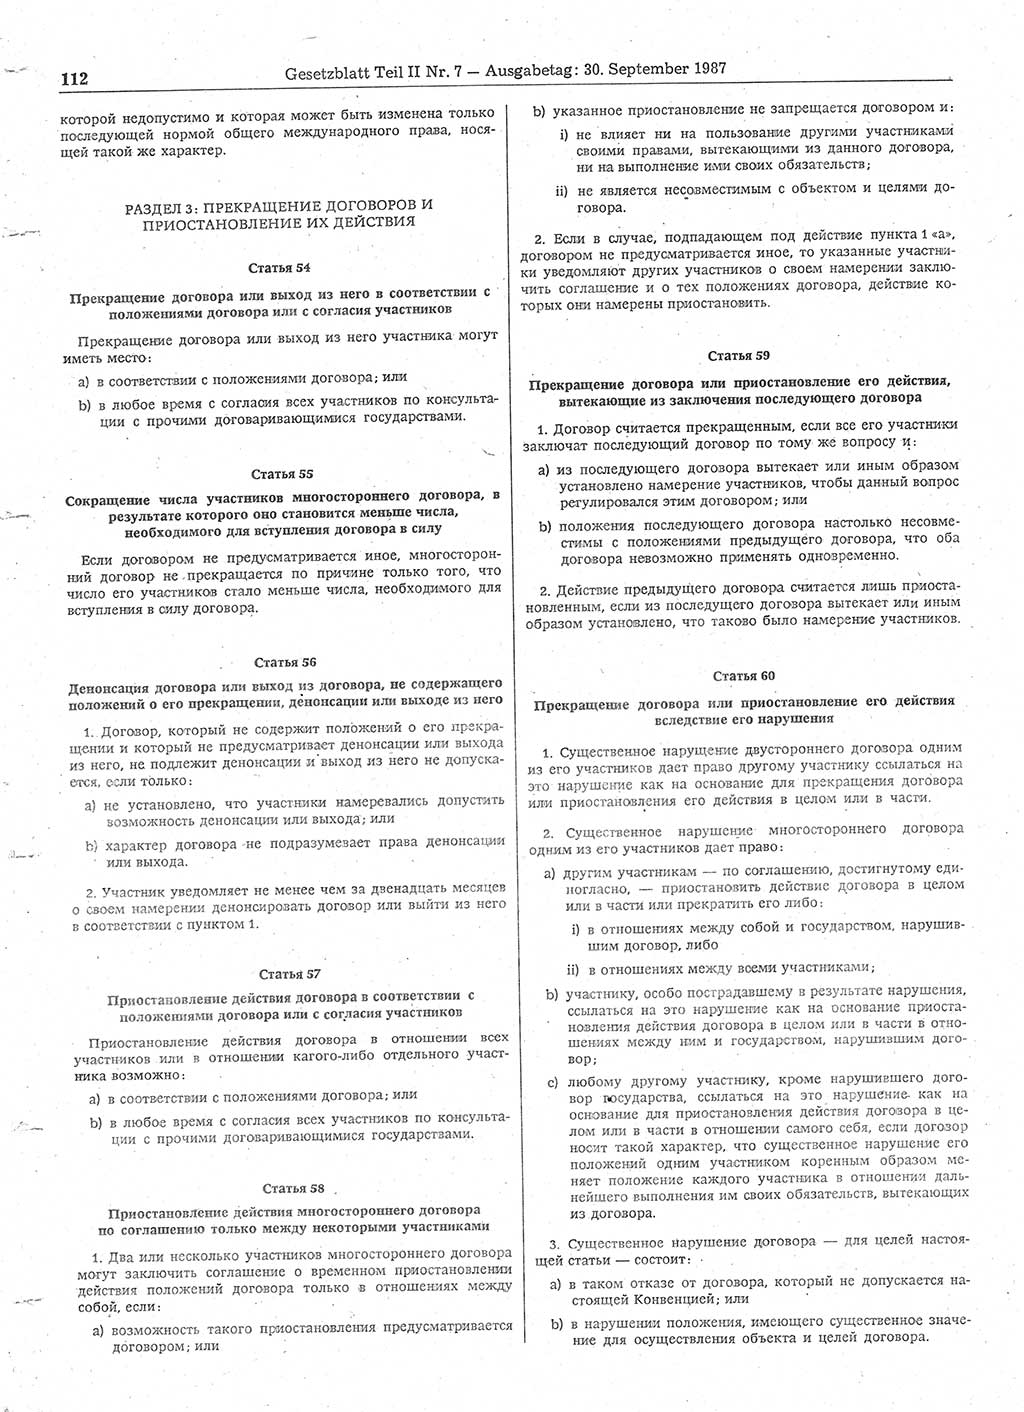 Gesetzblatt (GBl.) der Deutschen Demokratischen Republik (DDR) Teil ⅠⅠ 1987, Seite 112 (GBl. DDR ⅠⅠ 1987, S. 112)